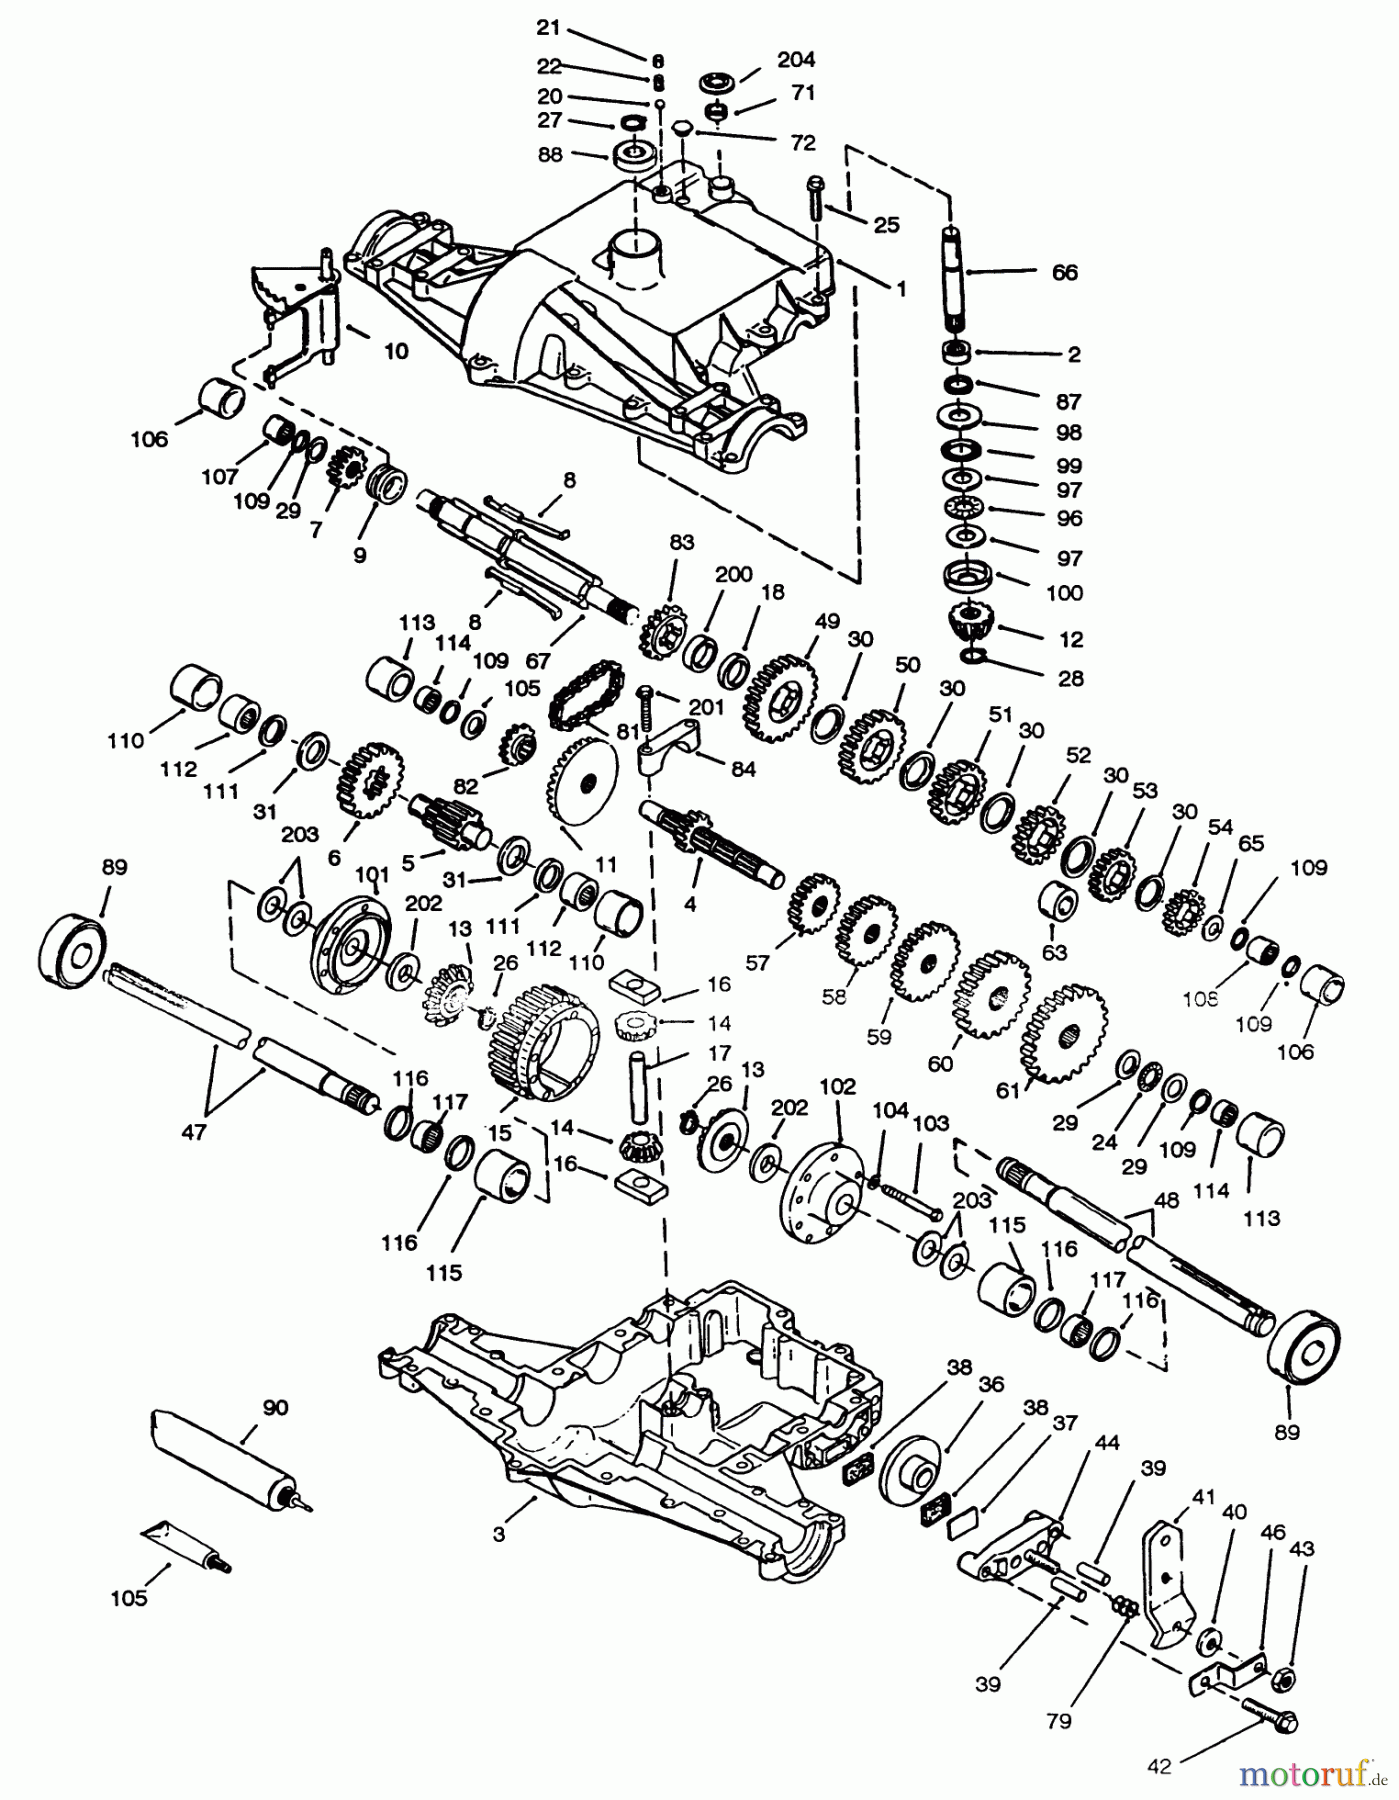  Toro Neu Mowers, Lawn & Garden Tractor Seite 1 72062 (264-6) - Toro 264-6 Yard Tractor, 1994 (4900001-4999999) PEERLESS TRANSAXLE 820-024